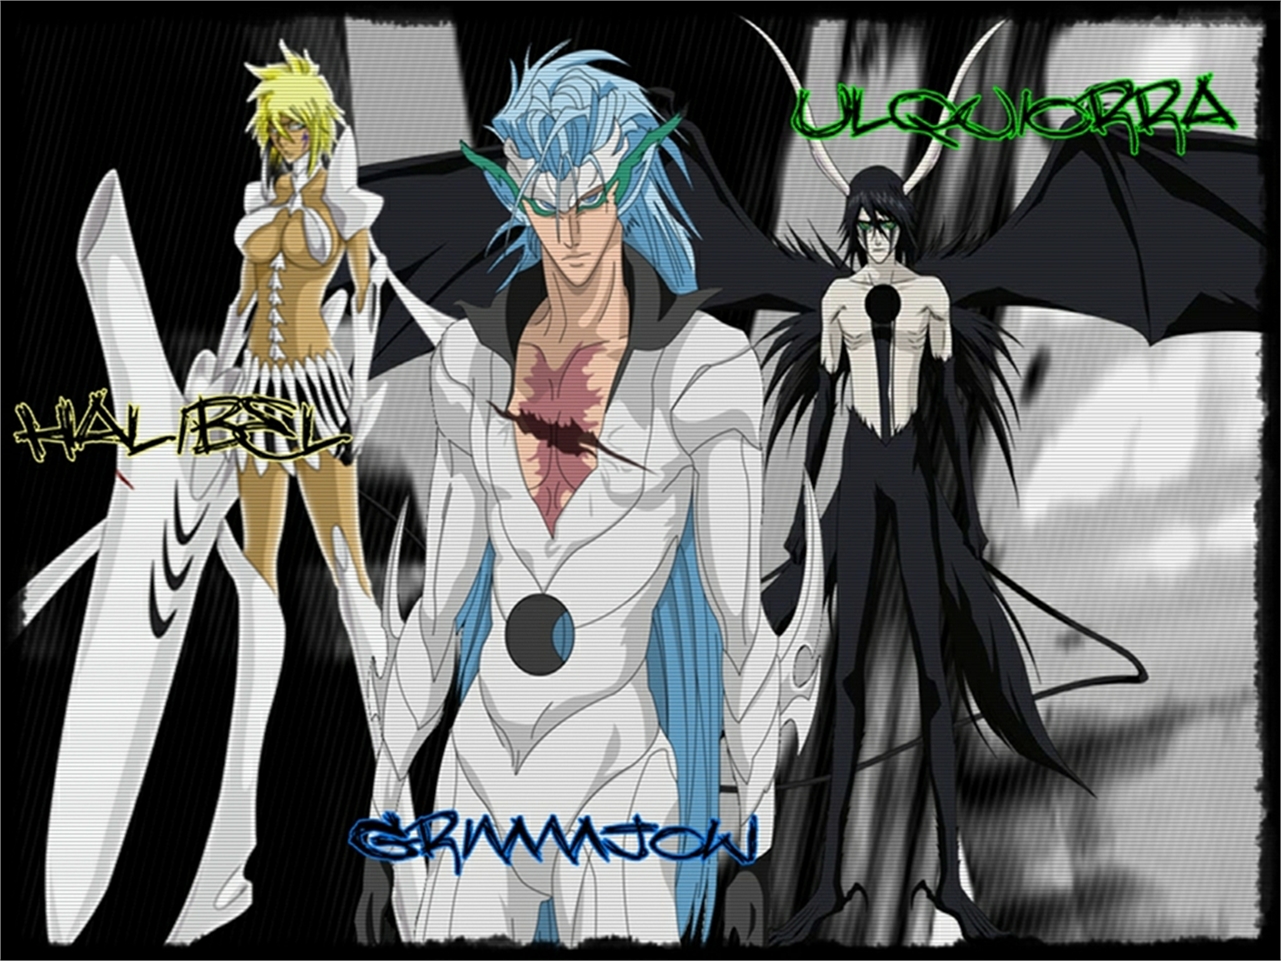 Free download wallpaper Anime, Bleach, Ulquiorra Cifer, Grimmjow Jaegerjaquez, Tier Halibel on your PC desktop